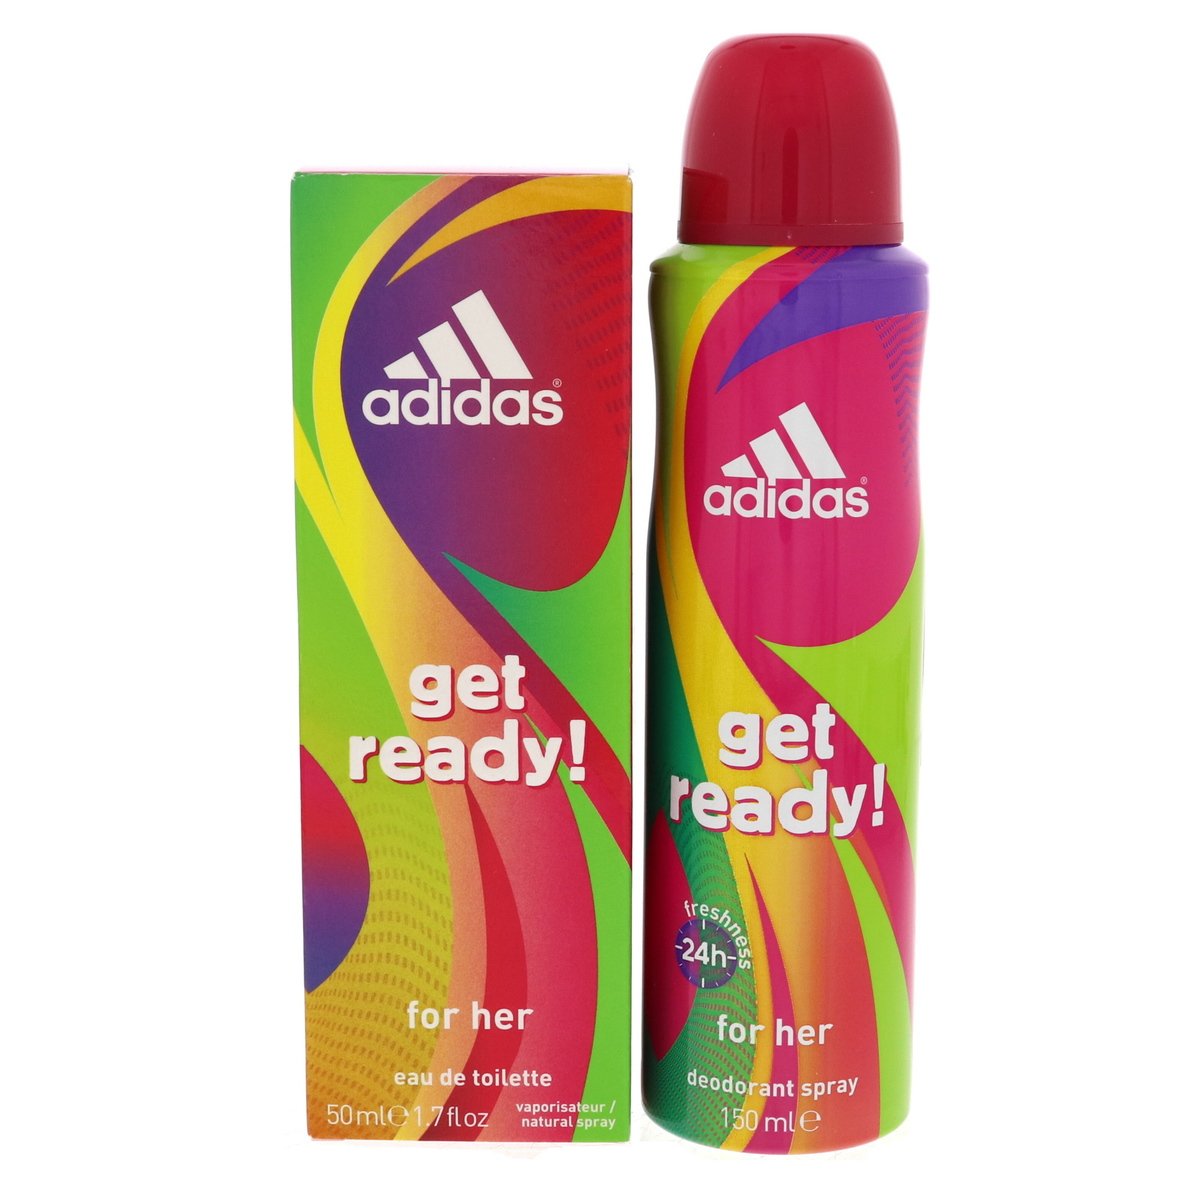 Adidas Get Ready For Her Eau De Toilette 50 ml + Deodorant Spray 150 ml